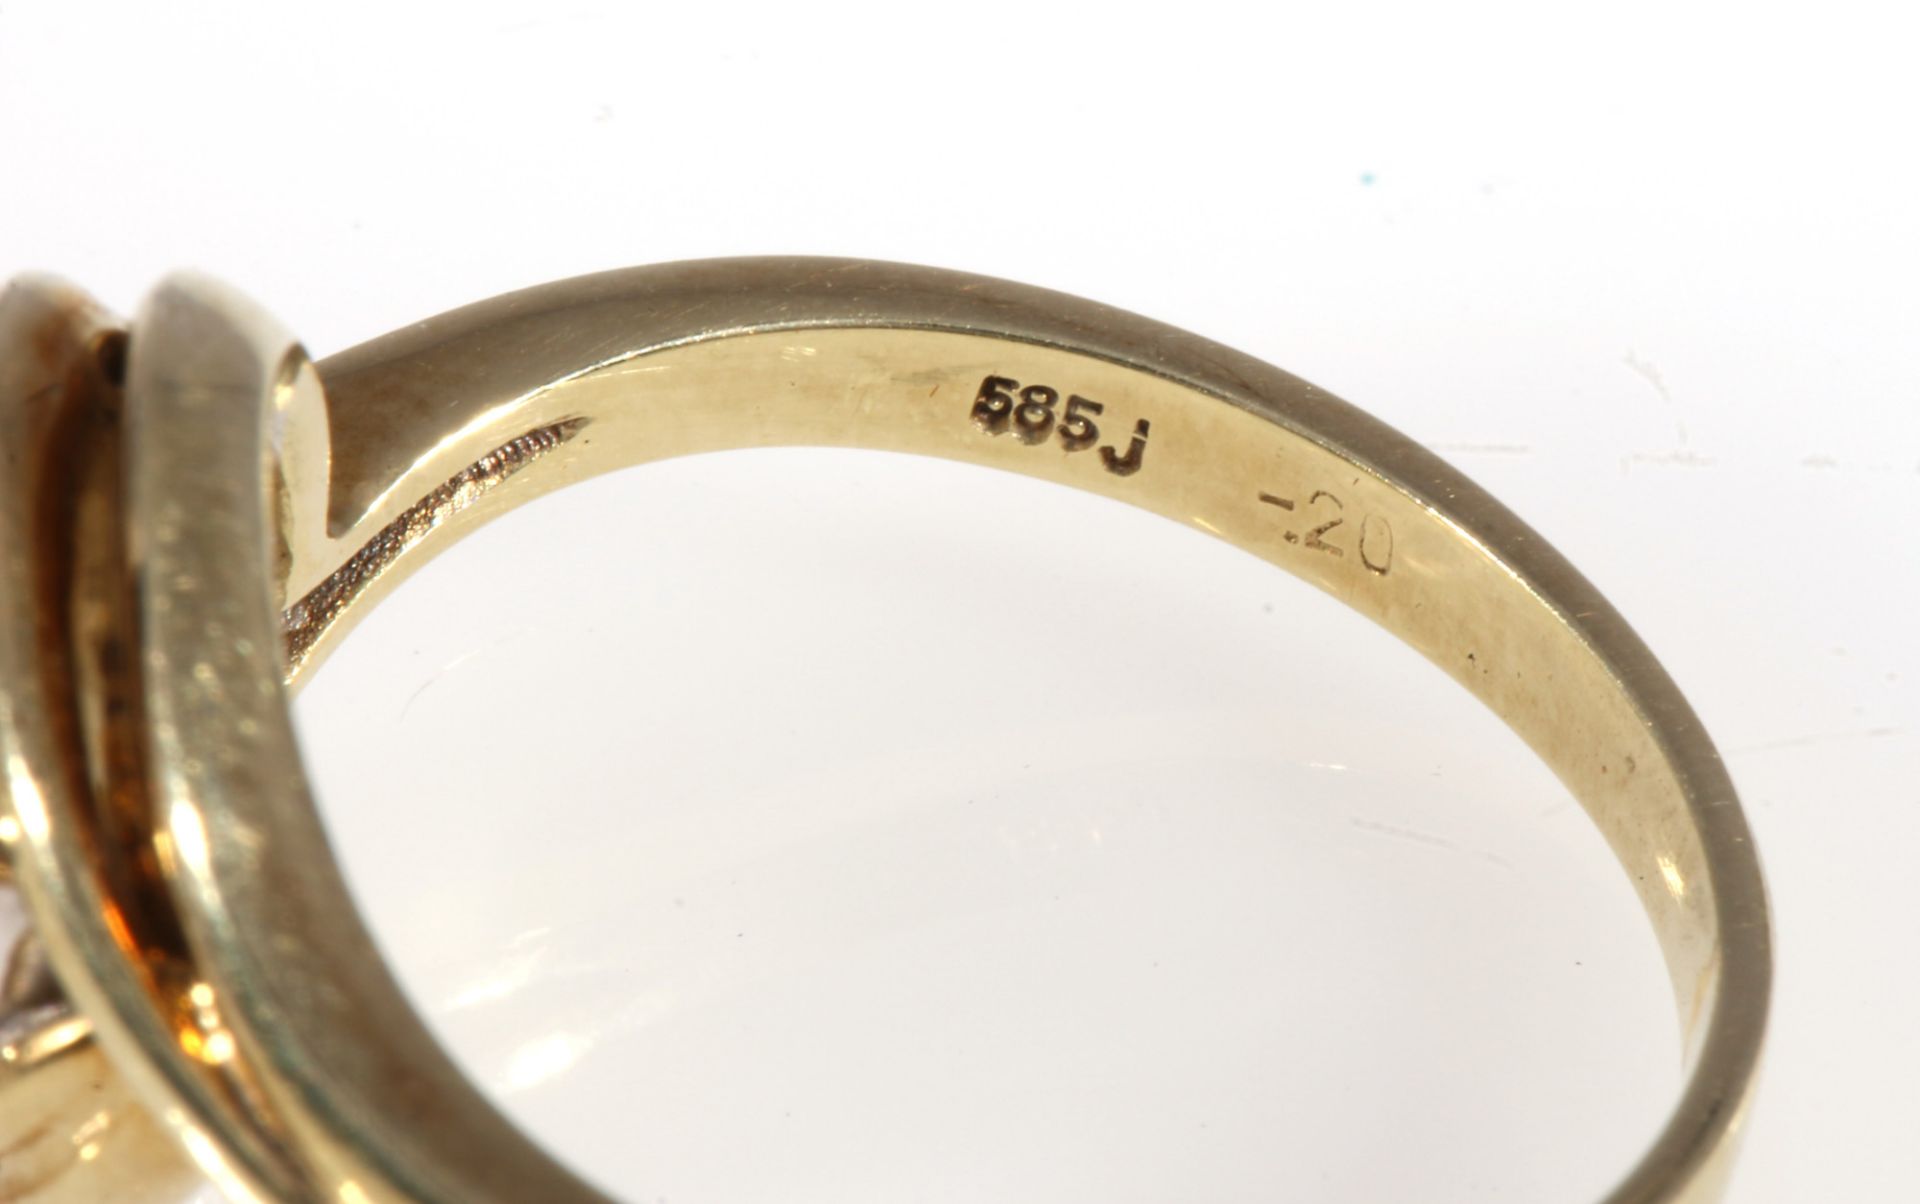 585 gold ring sapphires and diamonds, 14K Gold Ring mit Saphiren und Brillanten, - Image 4 of 4